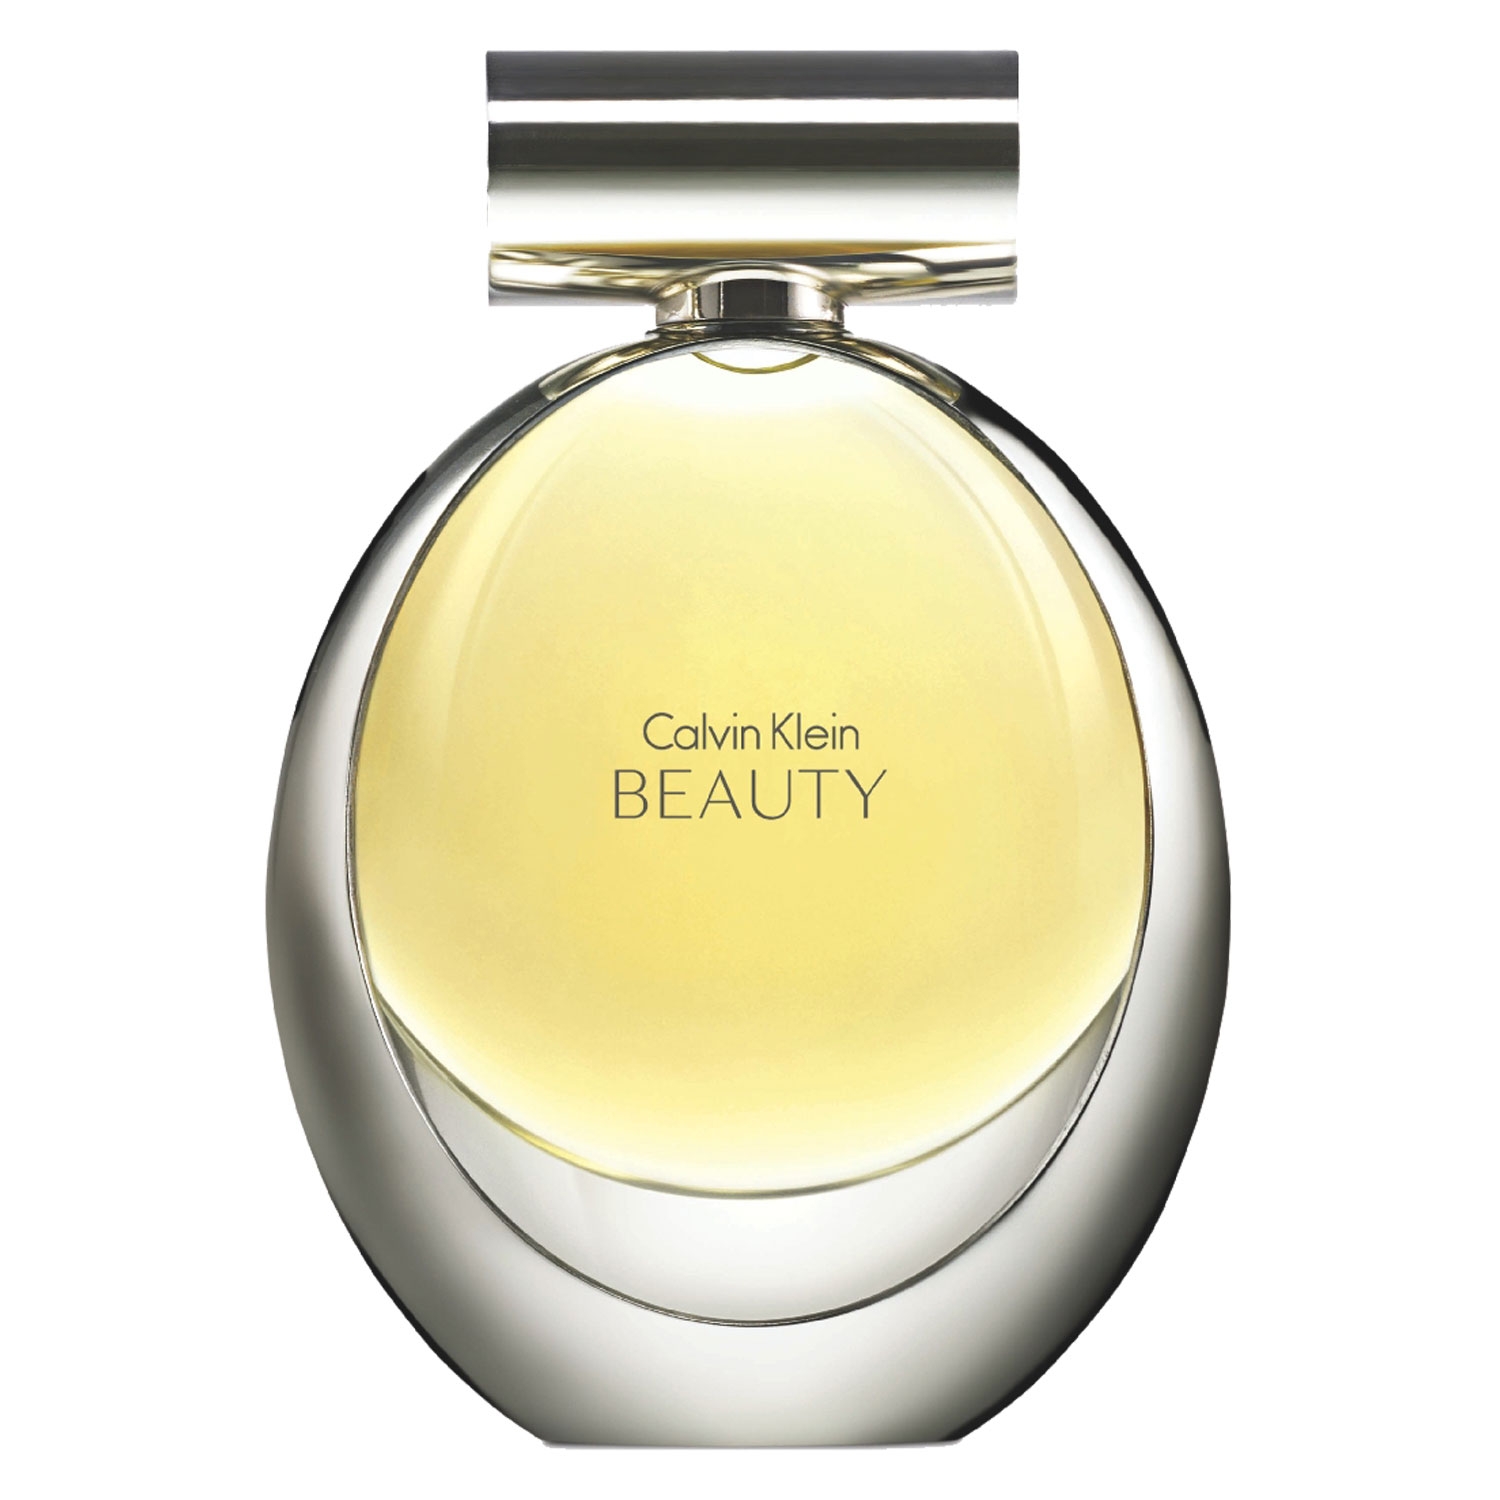 Product image from Beauty - Eau de Parfum